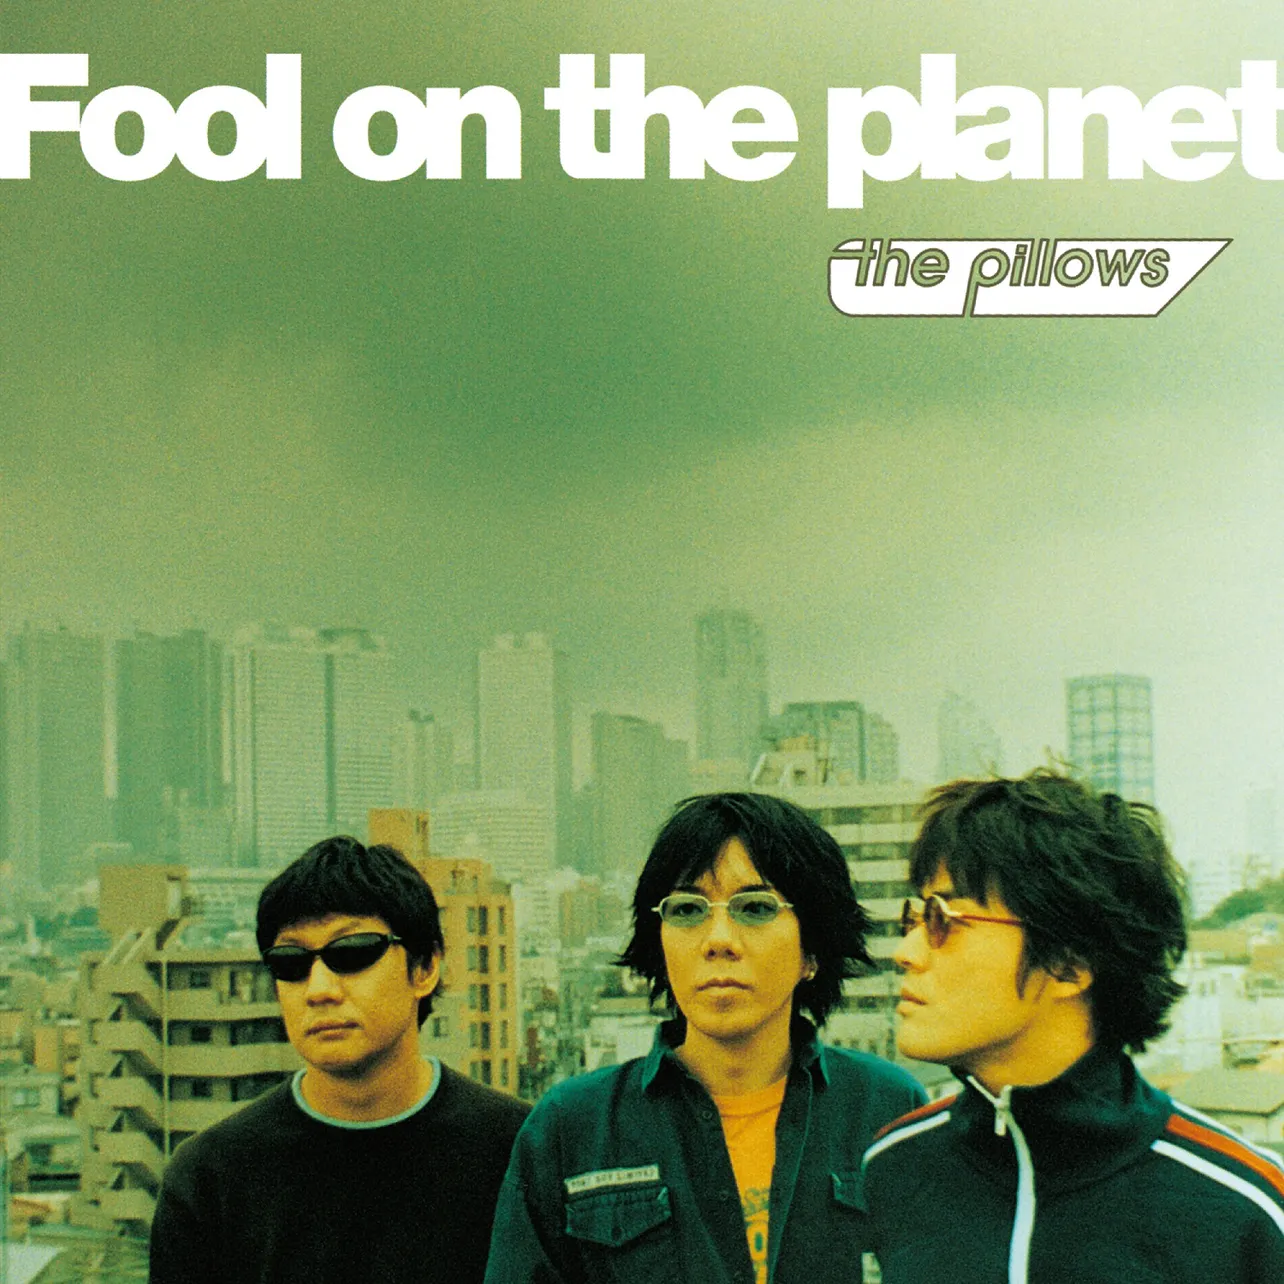 2001年に発売された、the pillowsのベストアルバム『Fool on the planet』